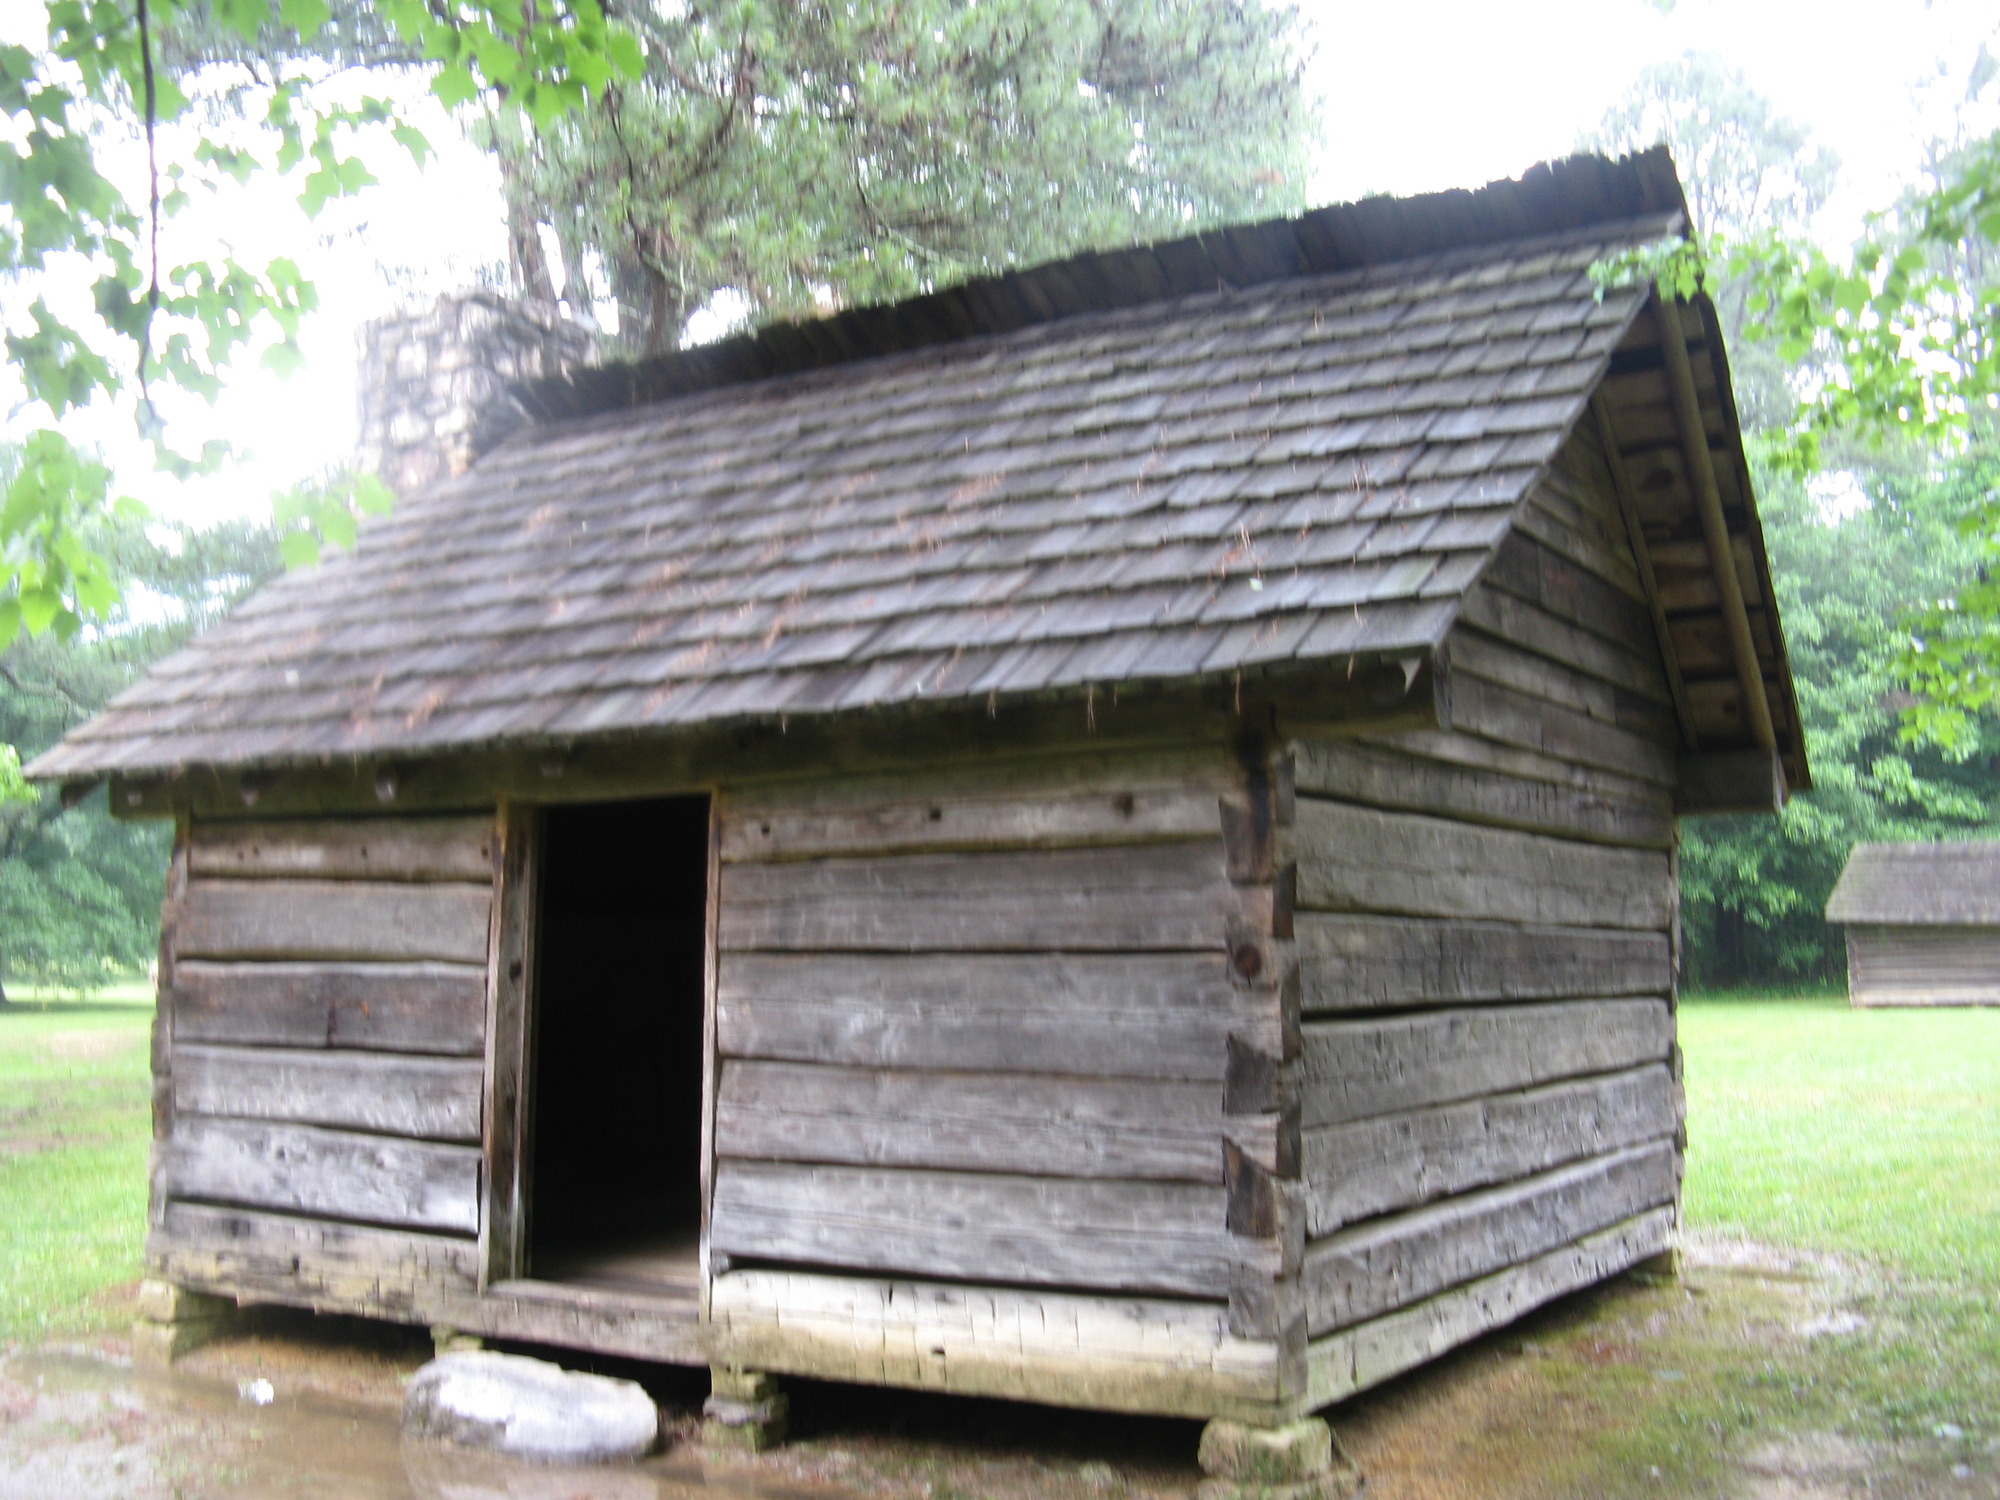 A small cabin structure at New Echota Historic Site in Gordon County, Georgia